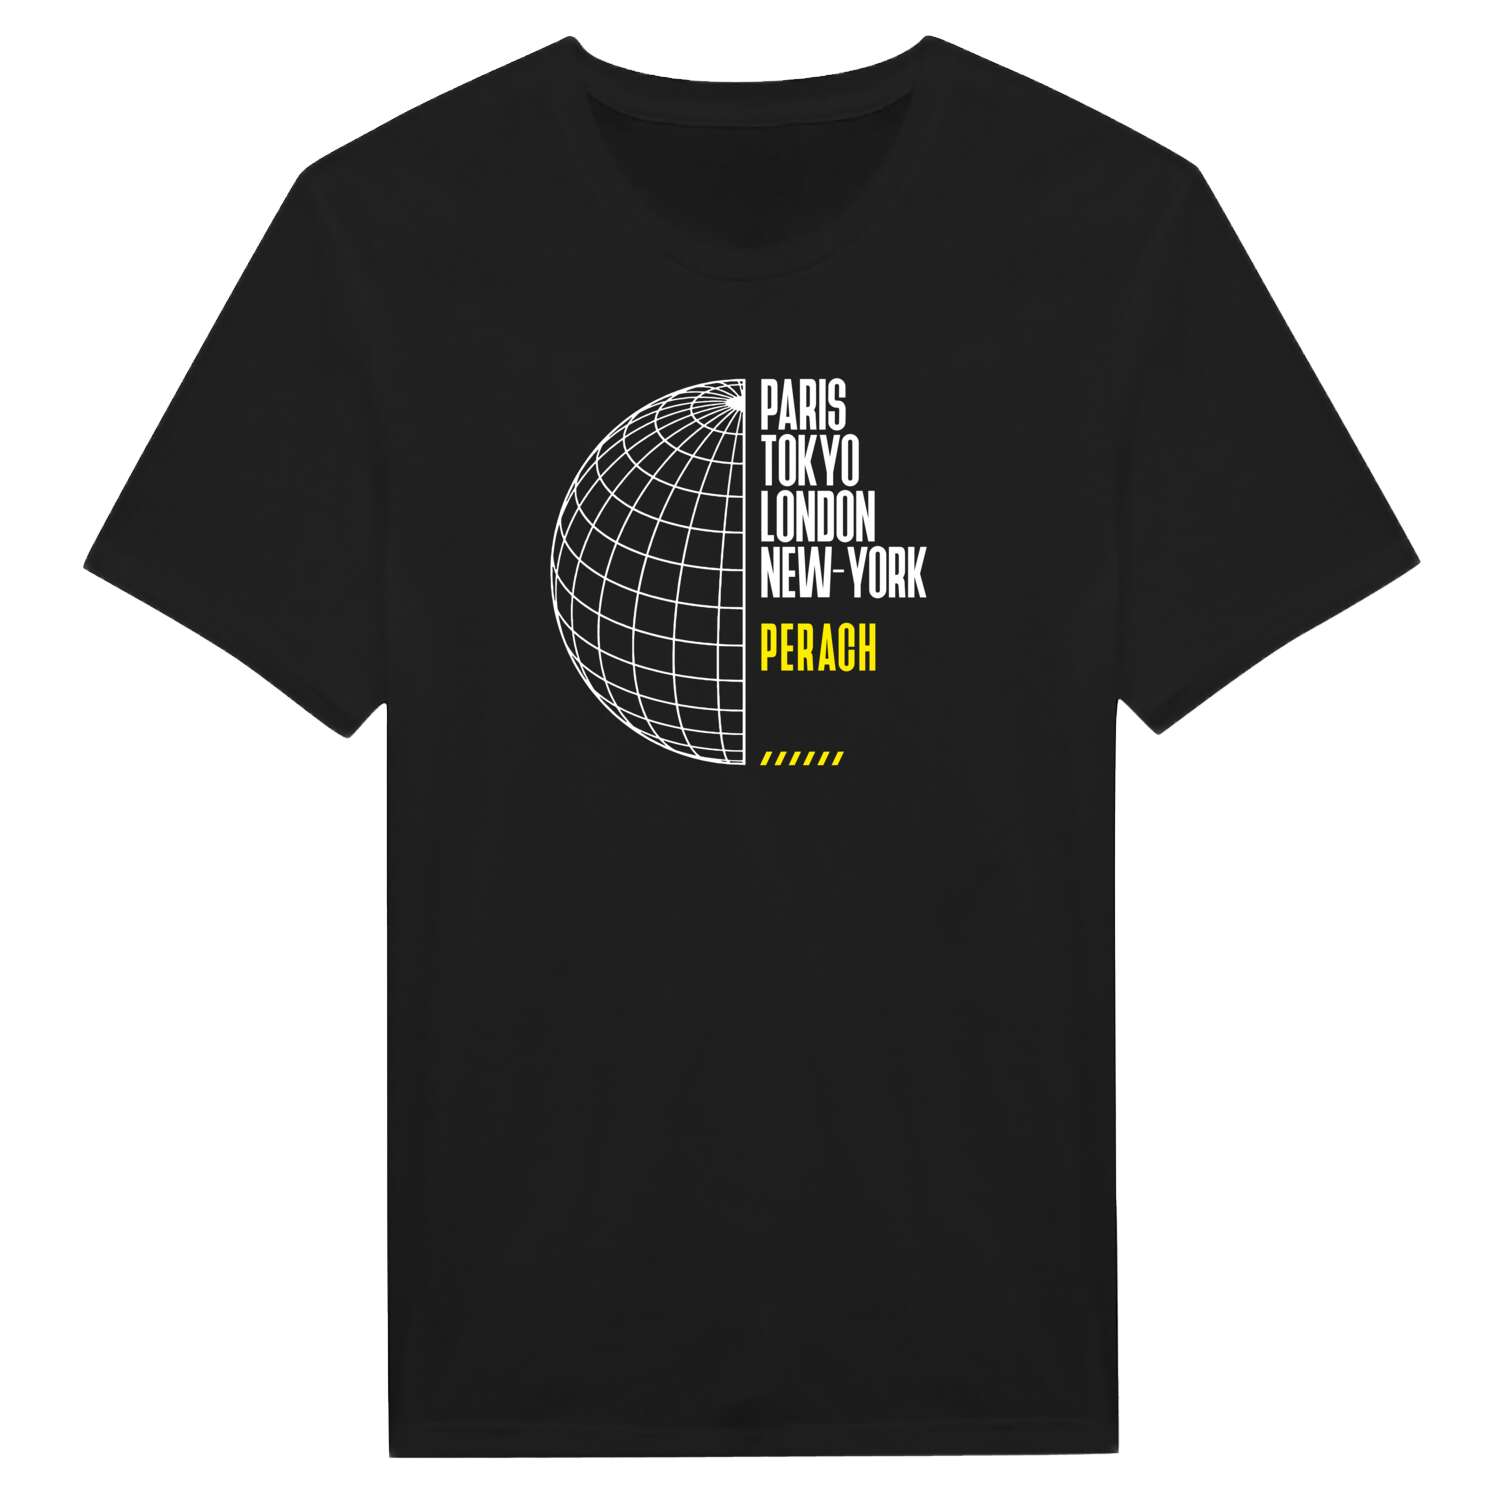 Perach T-Shirt »Paris Tokyo London«